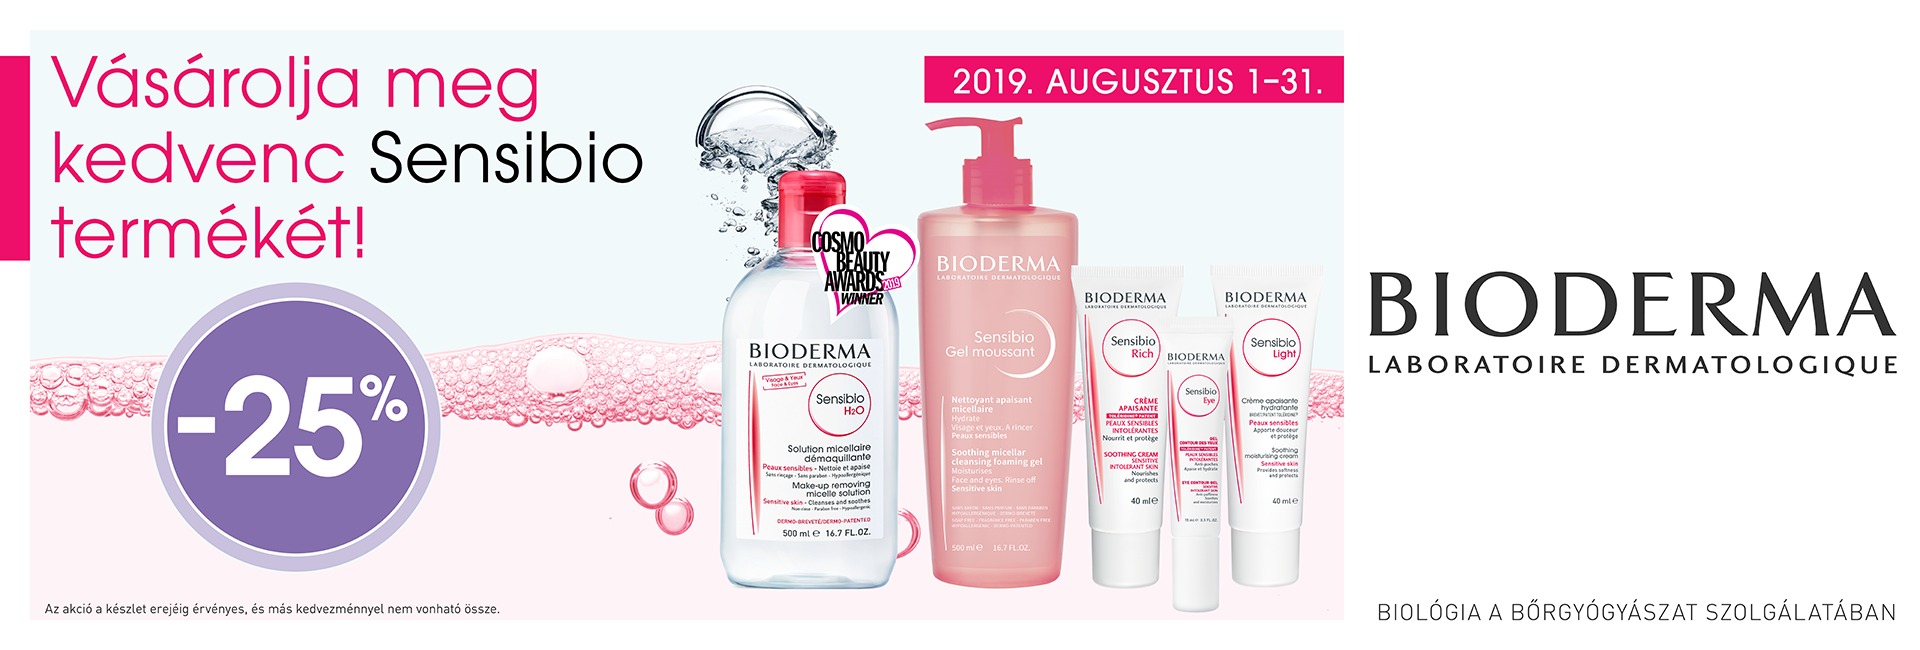 2019. augusztus 1-31. között minden Bioderma Sensibio terméket 25% kedvezménnyel kínálunk!